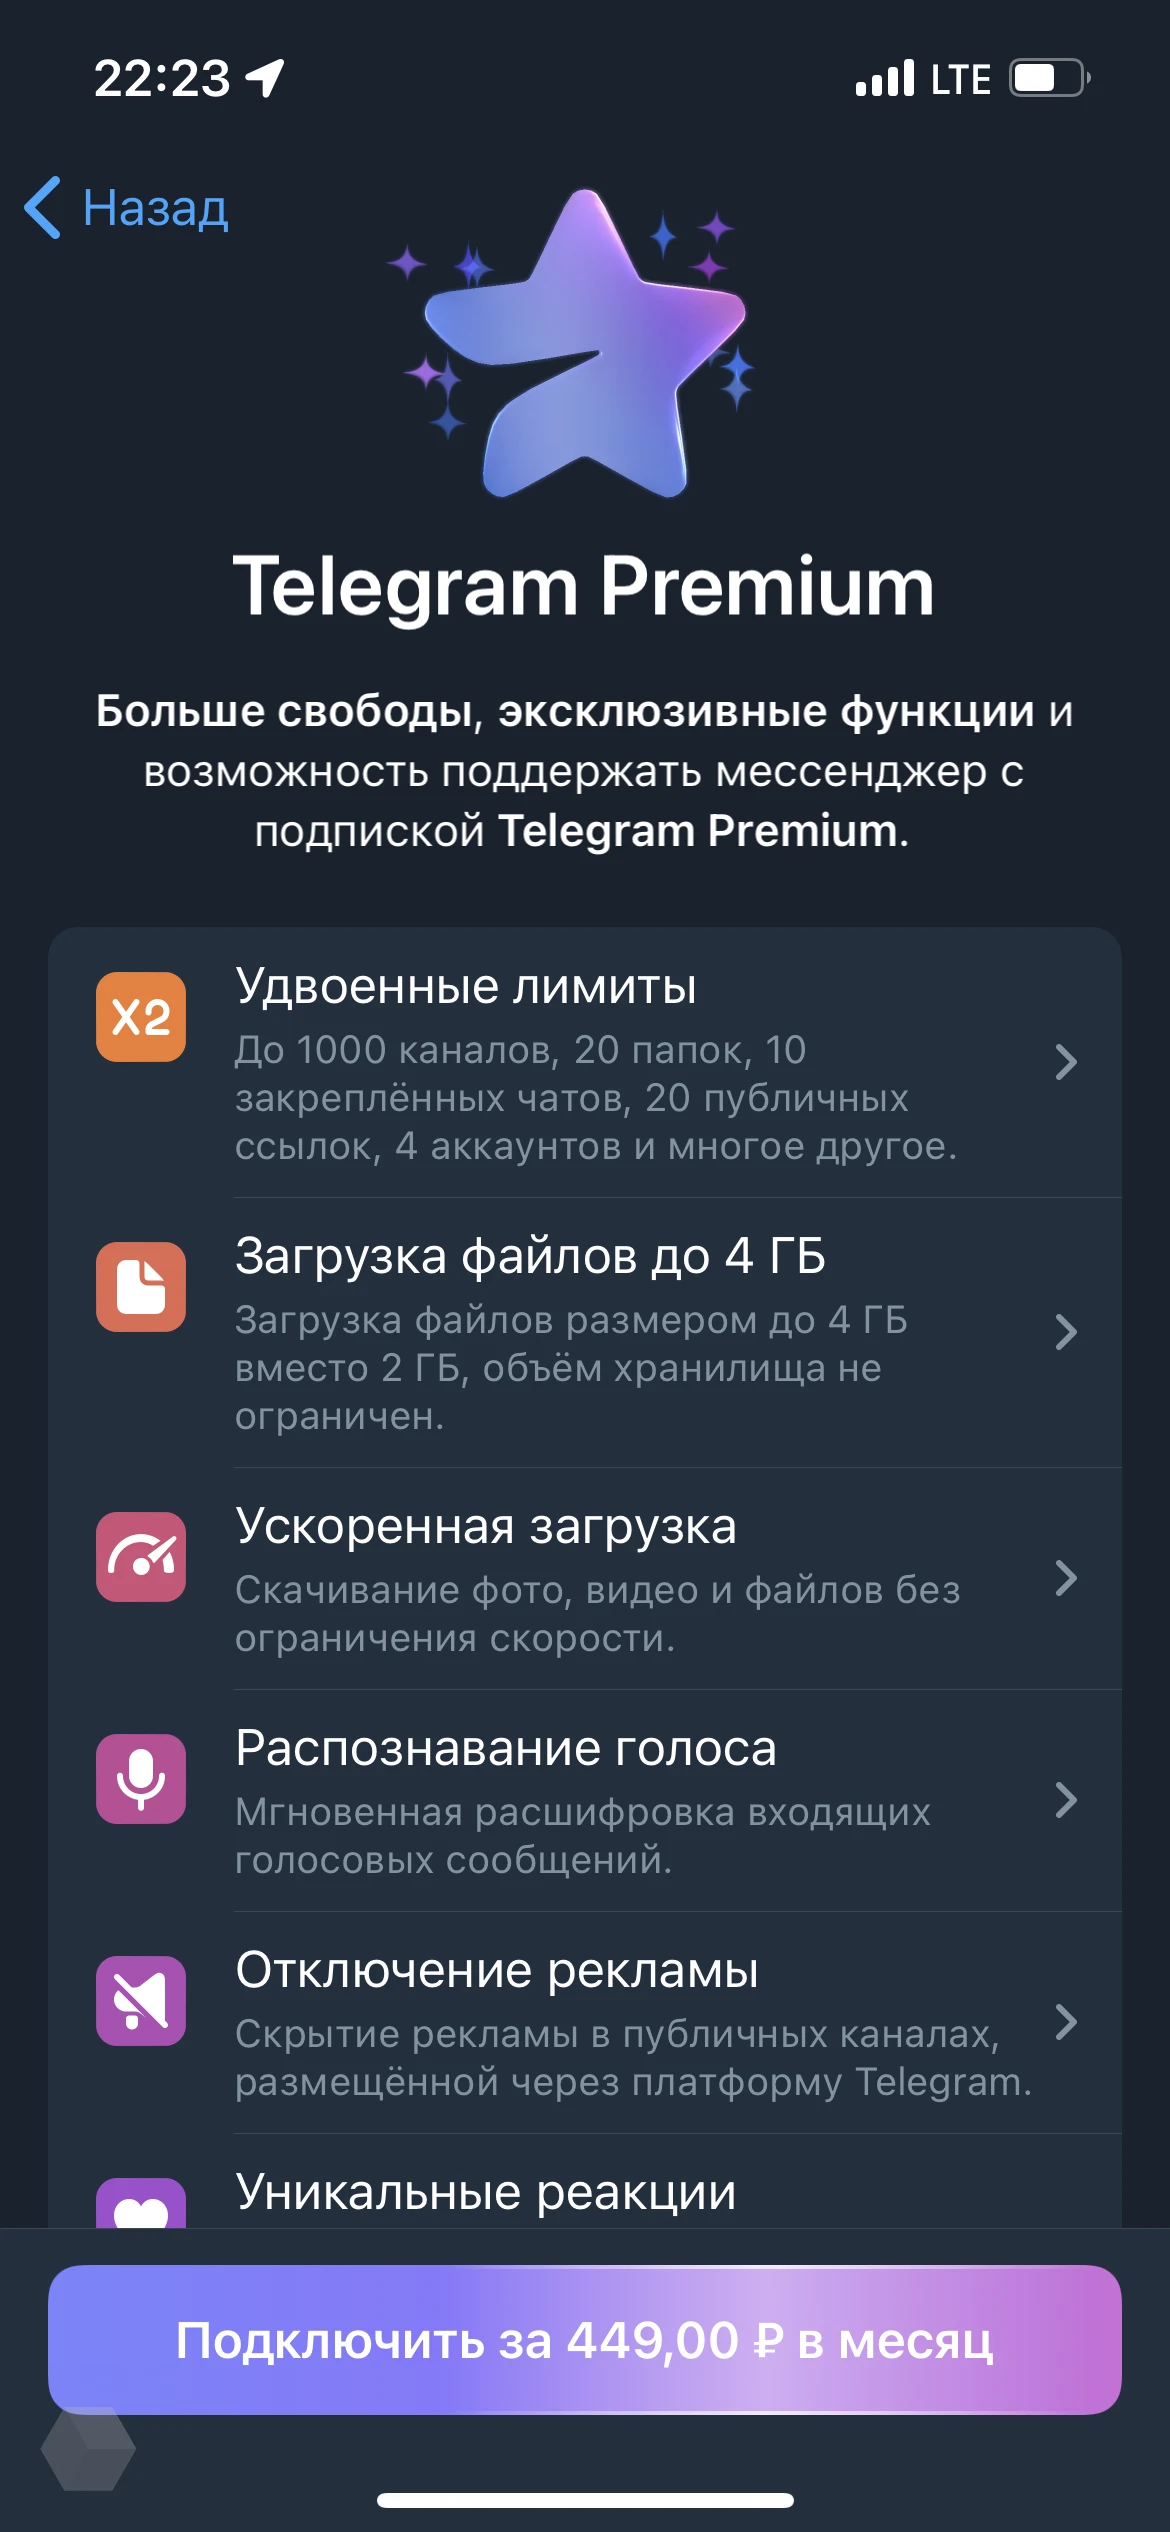 Премиум телеграмм бесплатно андроид скачать на русском последняя версия фото 88